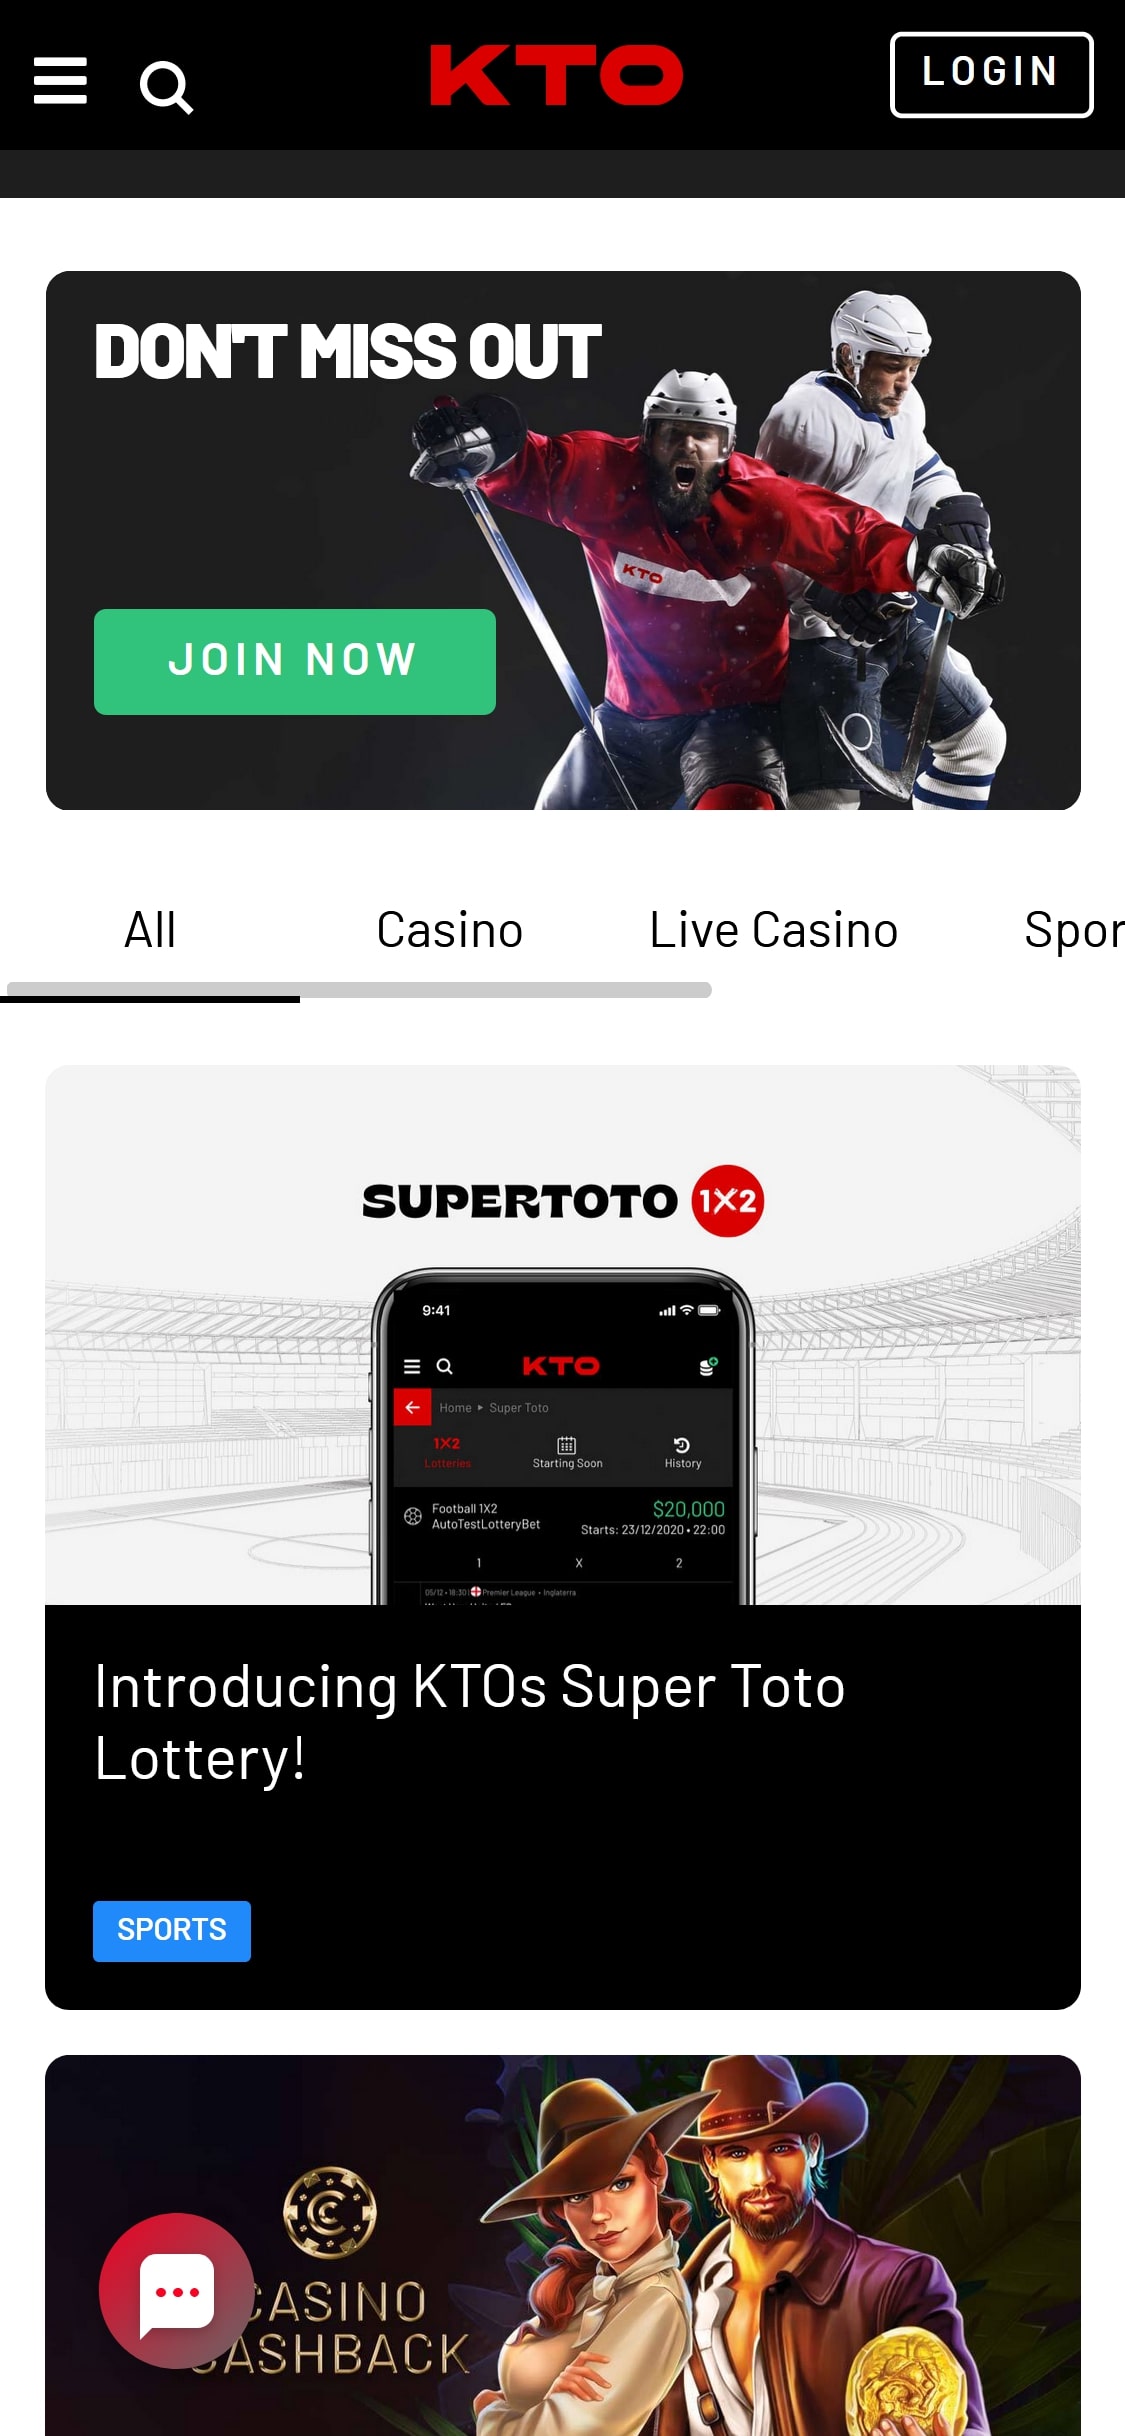 KTO Casino Mobile No Deposit Bonus Review